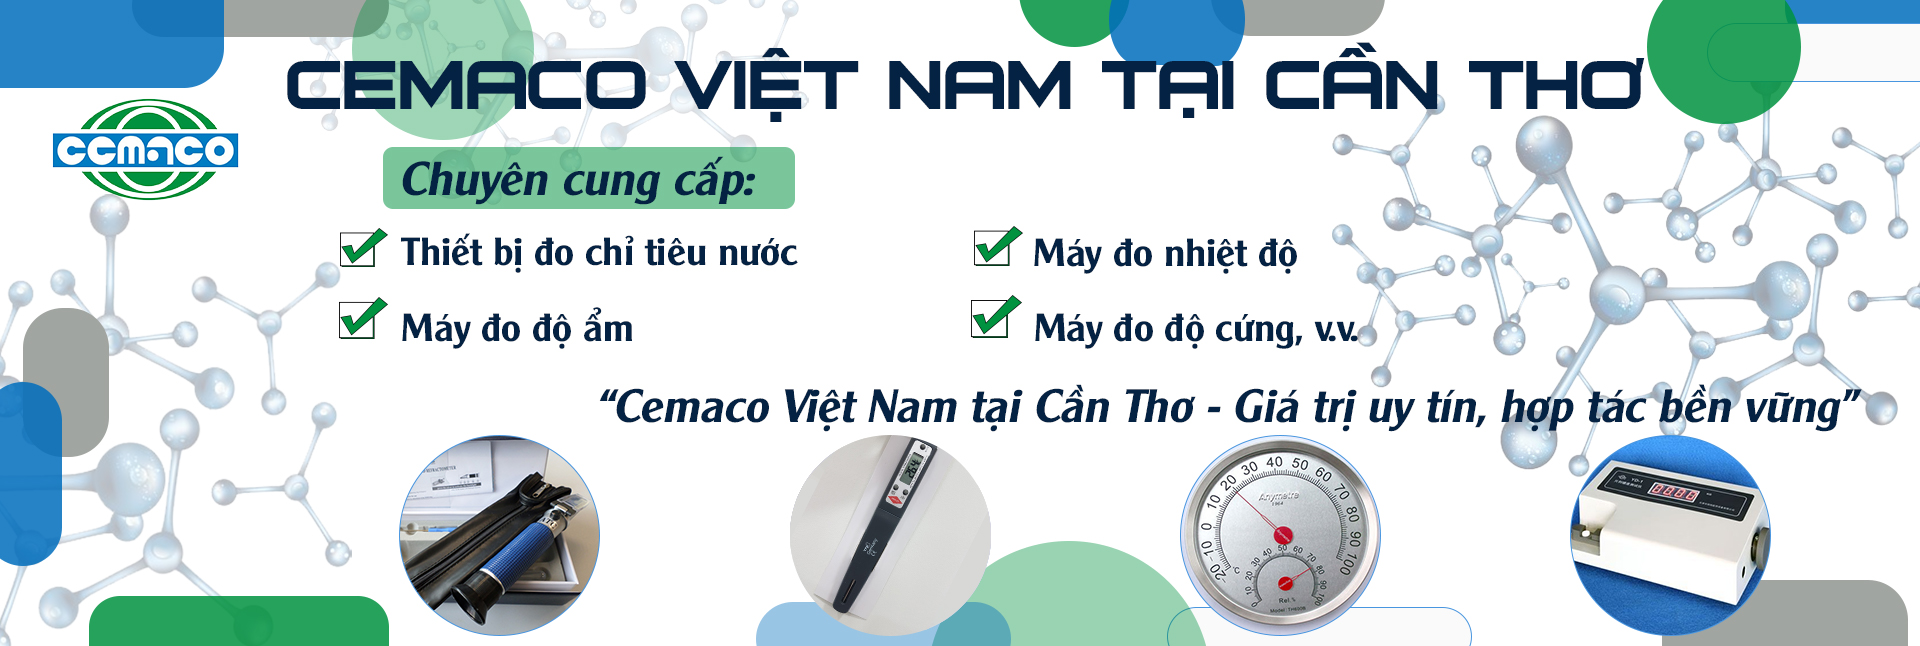 Công ty TNHH Cemaco Việt Nam tại Cần Thơ